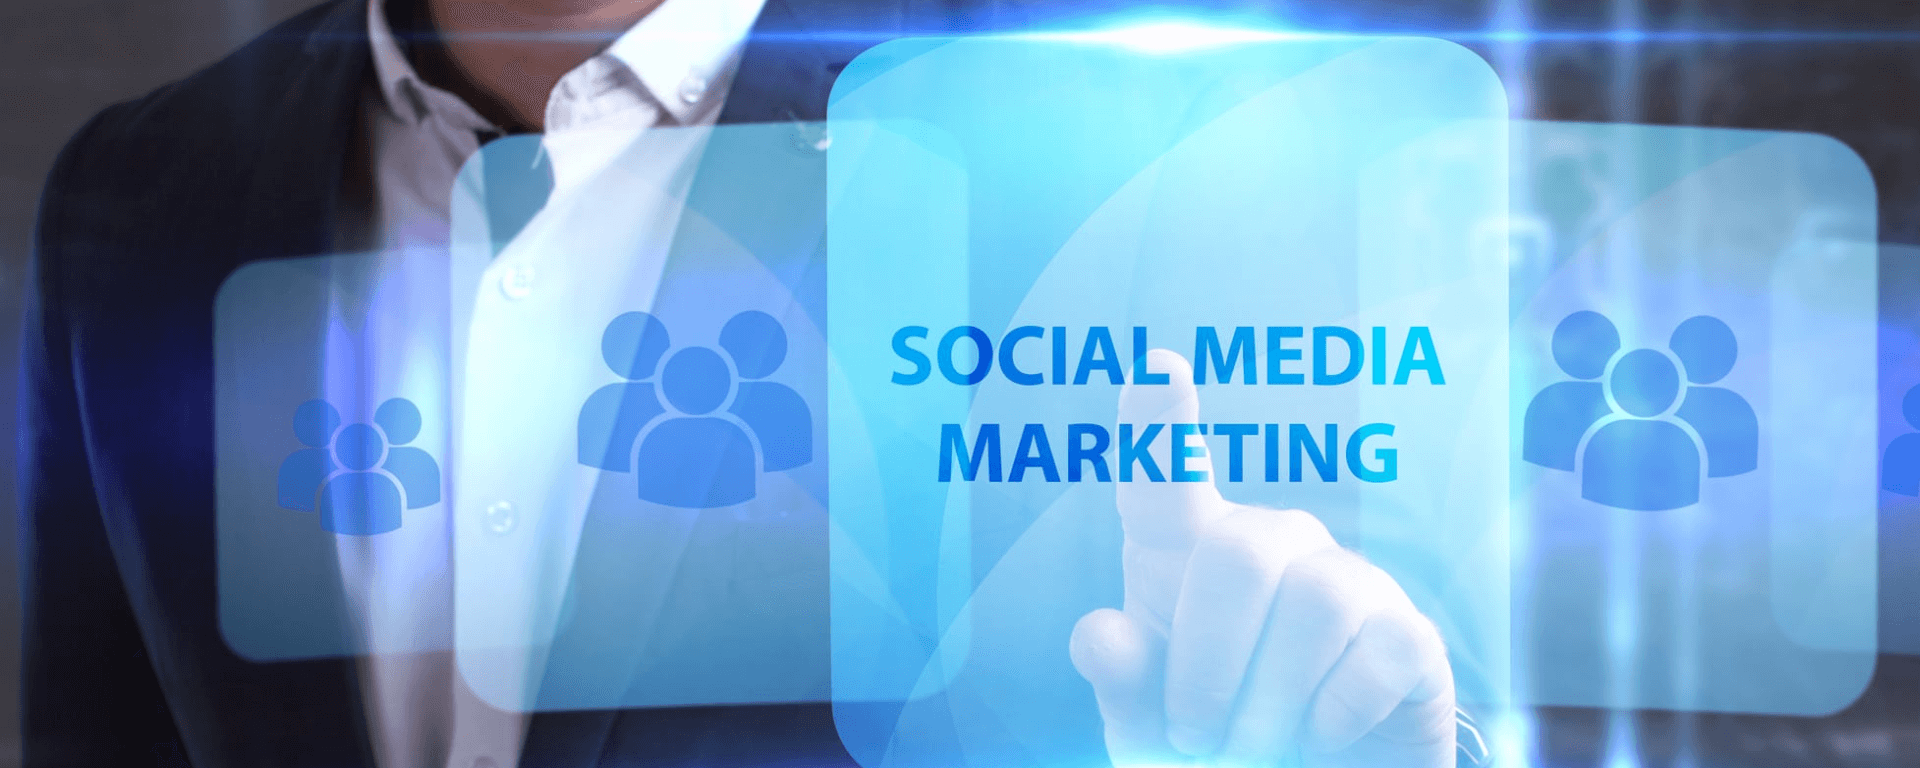 Social Media Marketing: Como medir o desempenho das campanhas e otimizar os resultados